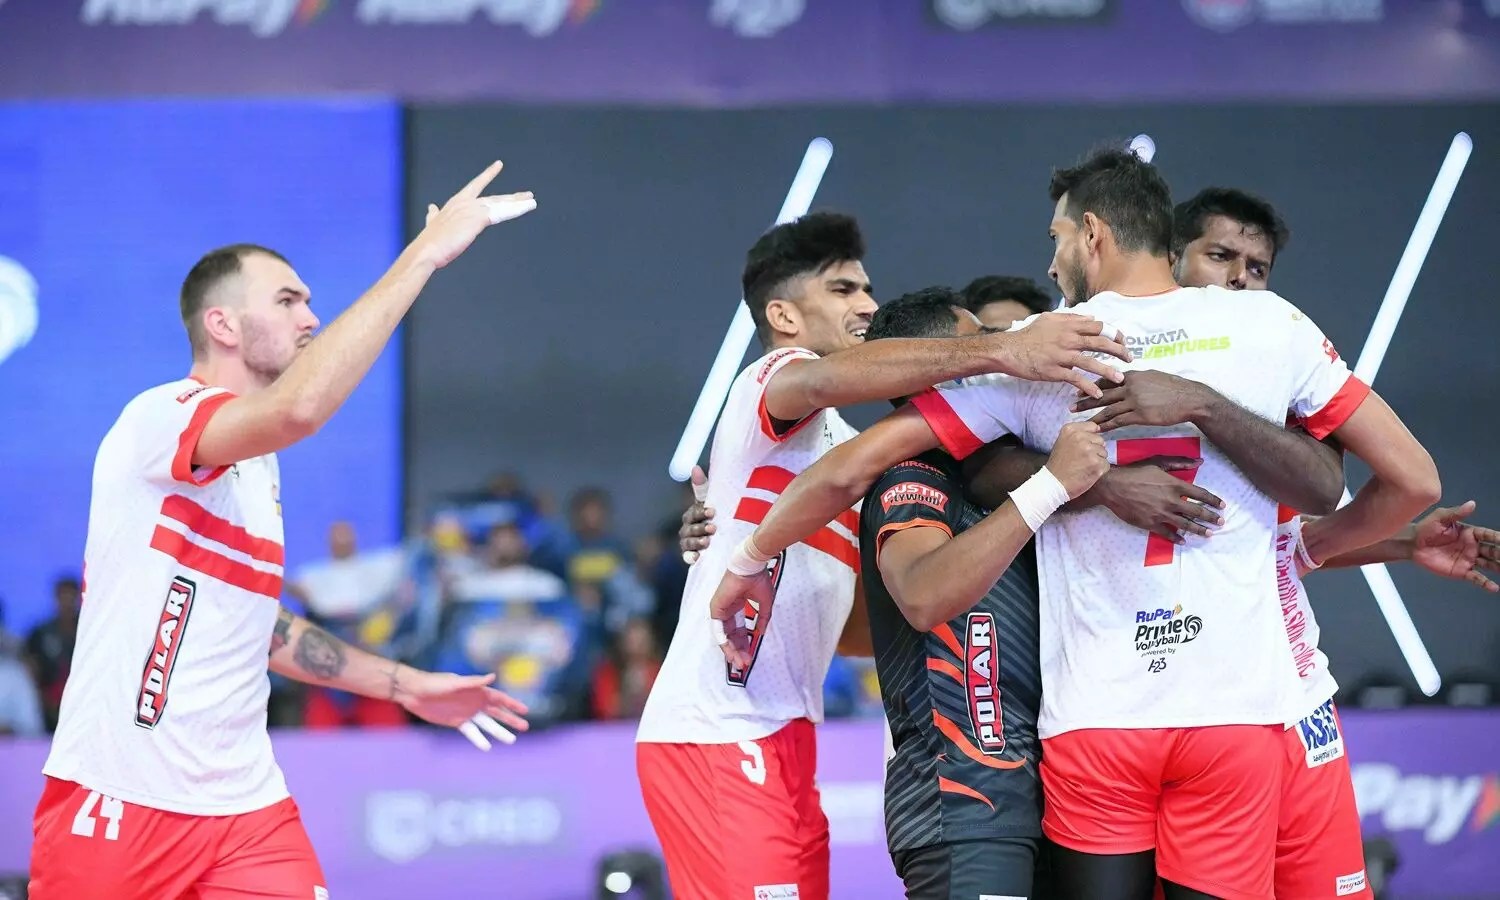 PVL 2023 CANLI: Savunan şampiyonlar Kolkata Thunderbolts, Prime Volleyball League 2. Sezon açılışında Bengaluru Torpidoları ile karşılaşacak - CANLI güncellemeleri takip edin 